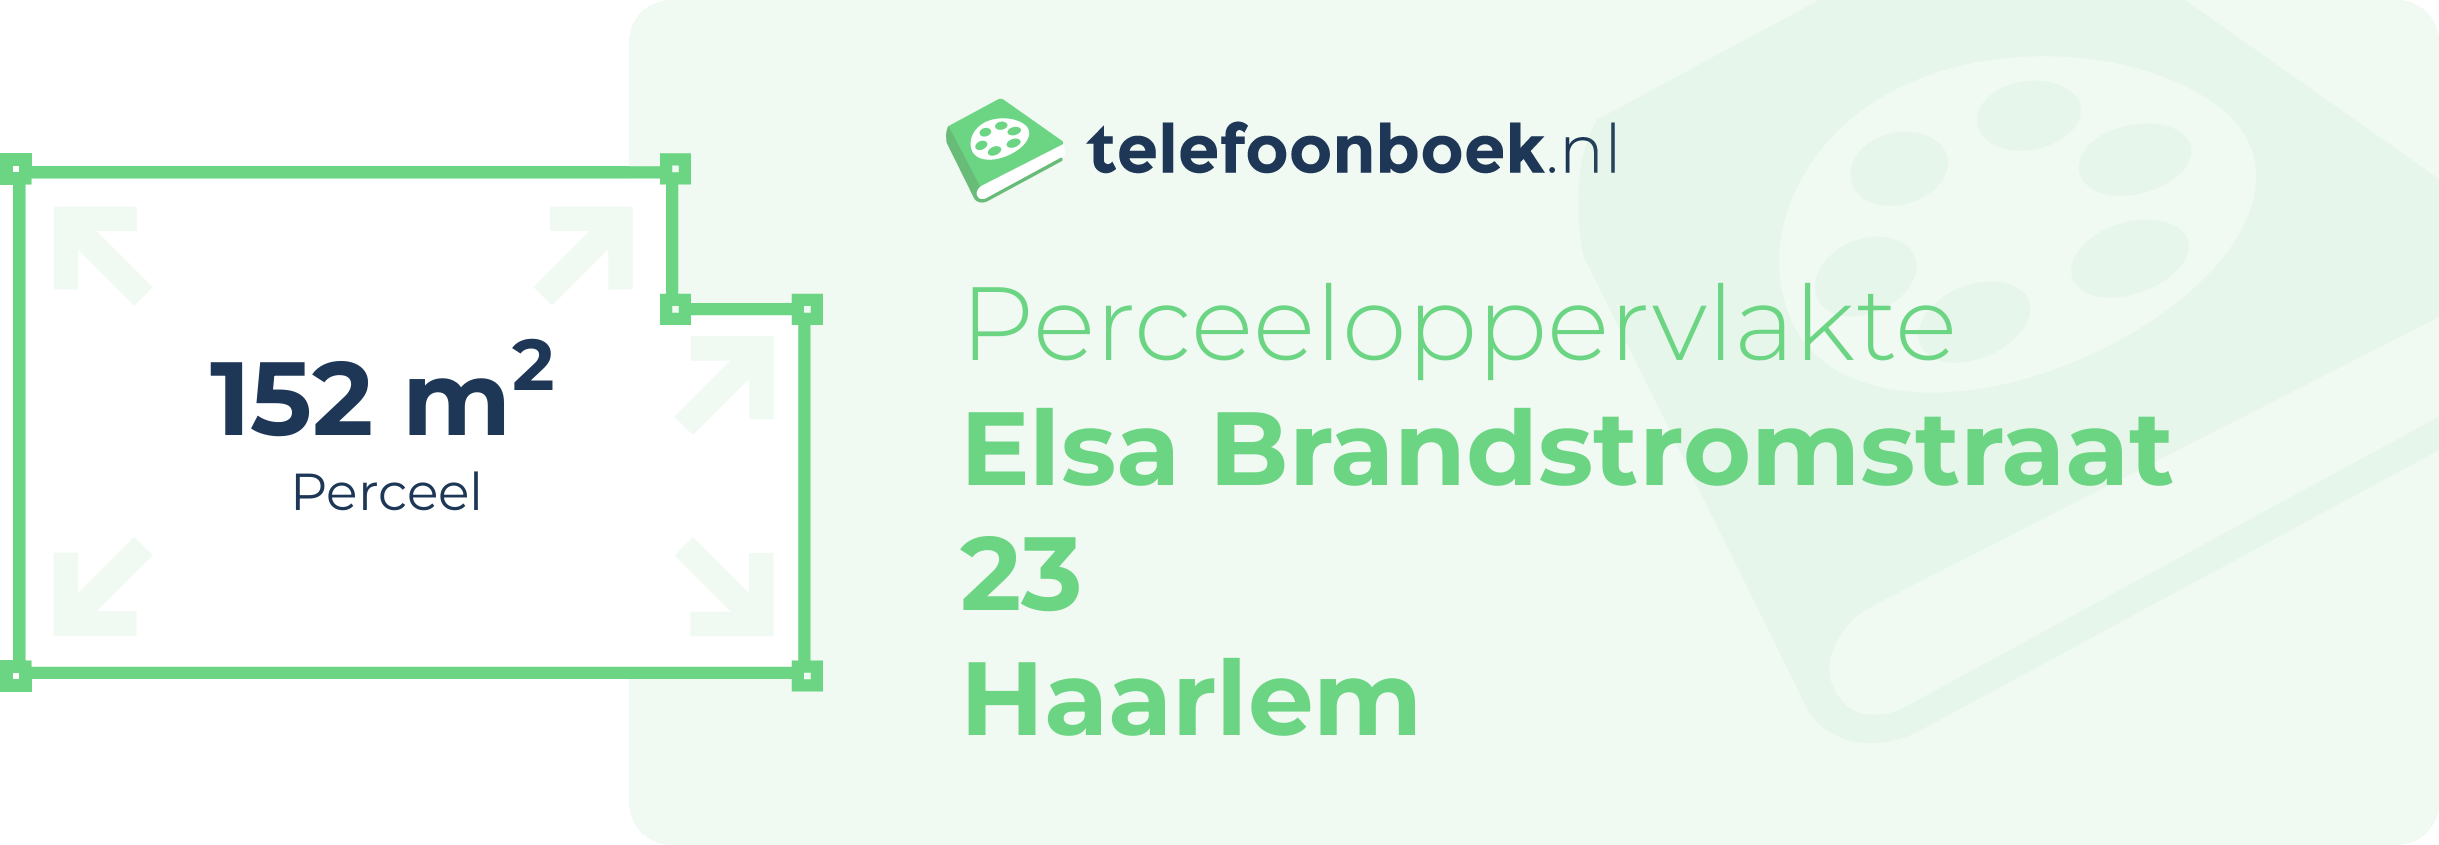 Perceeloppervlakte Elsa Brandstromstraat 23 Haarlem